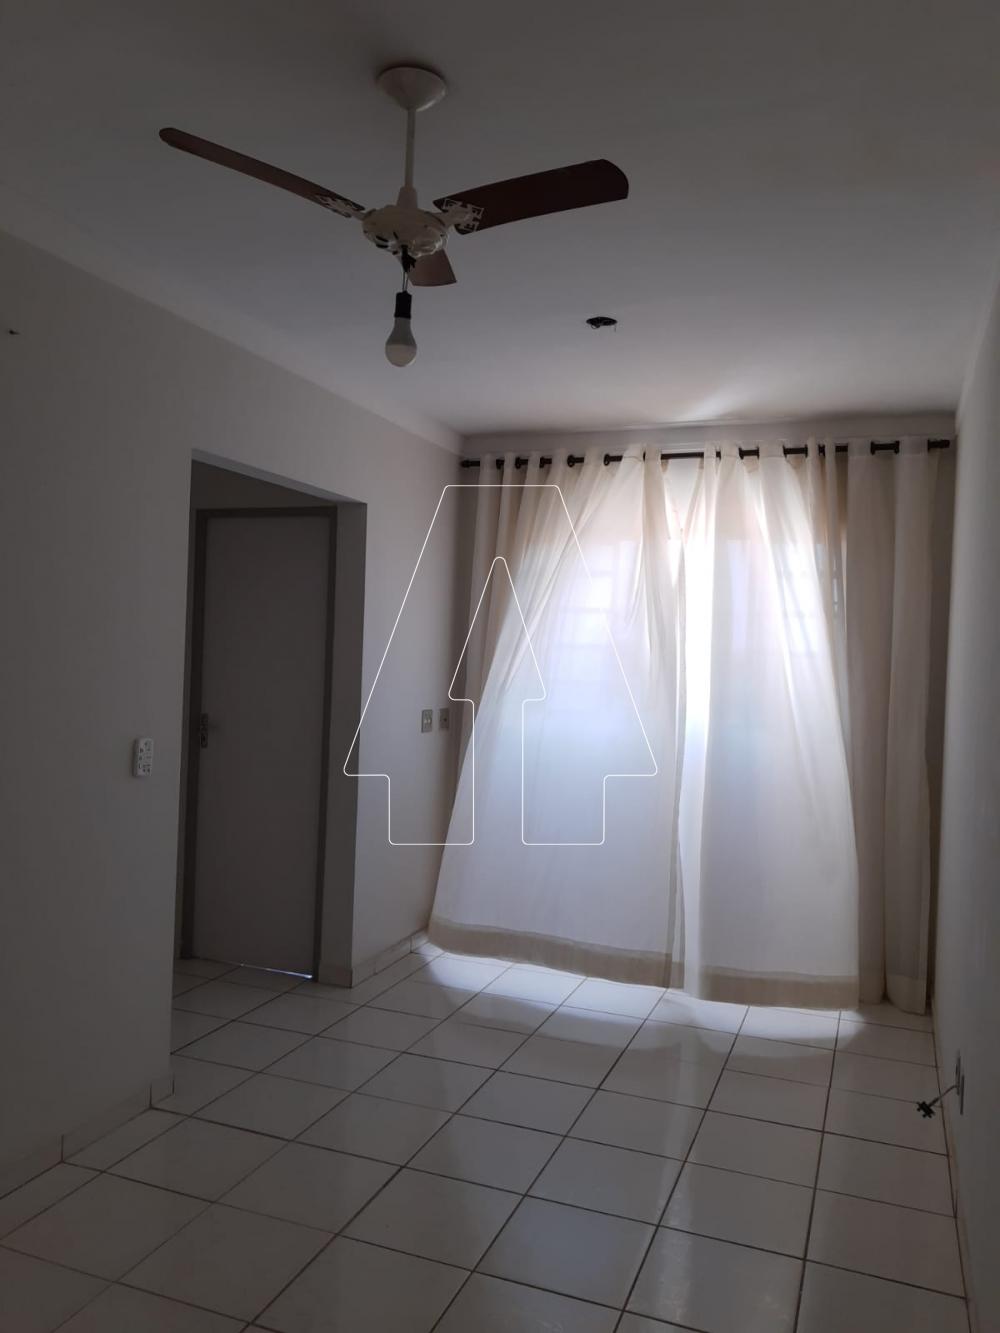 Alugar Apartamento / Padrão em Araçatuba R$ 850,00 - Foto 2